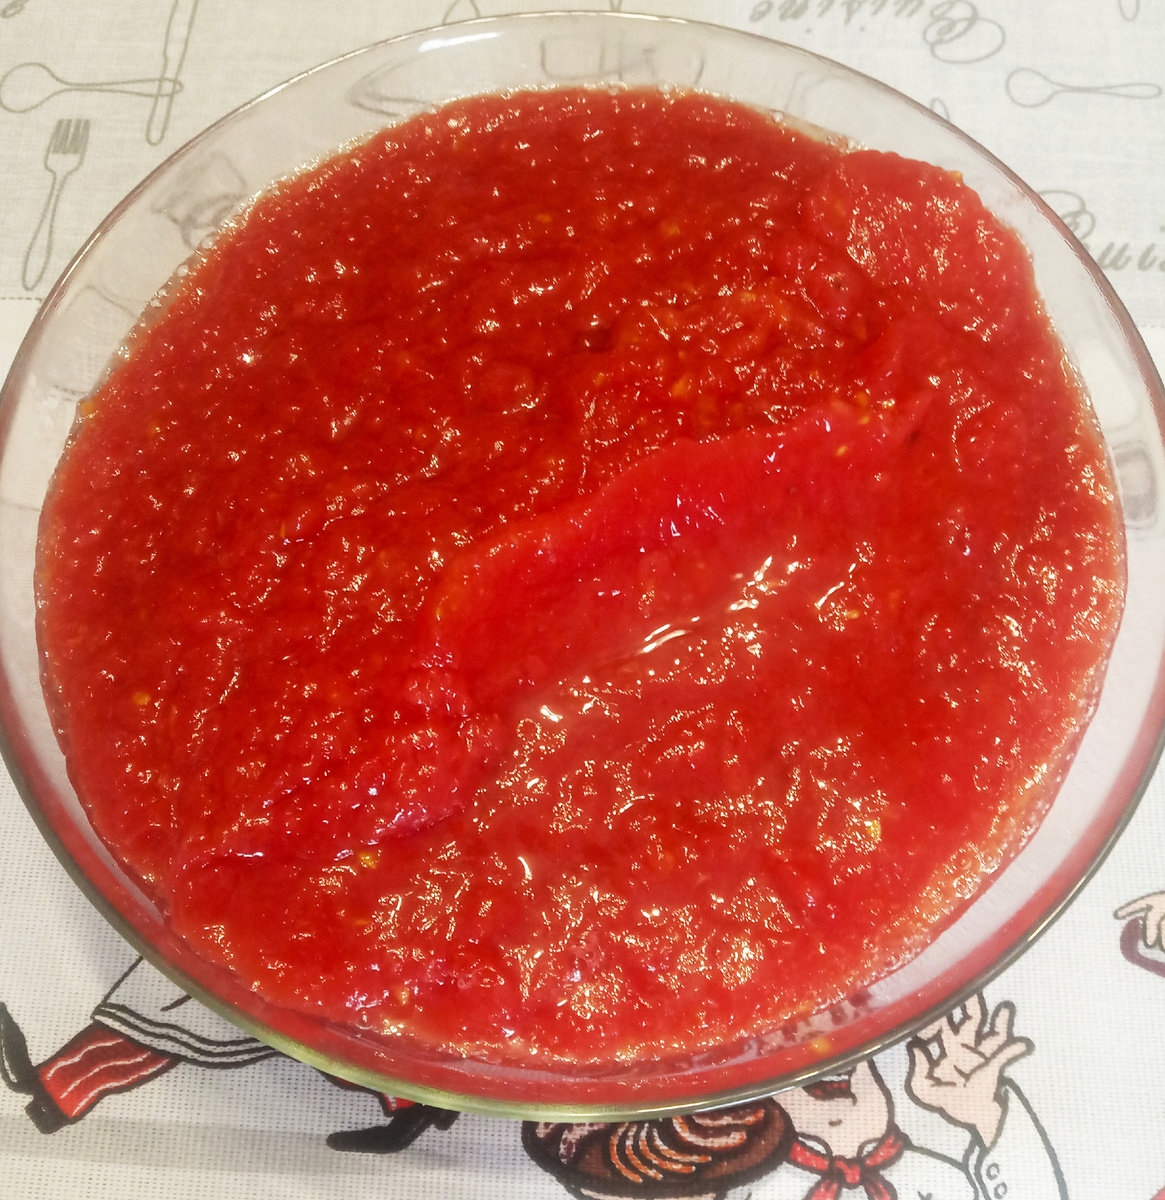 Добрый день, дорогие друзья! Сегодня хочу предложить Вам рецепт заготовки на зиму из болгарского перца с томатами. Ингредиенты: Перец болгарский - 2,5 кг., Помидоры - 1,5 кг.